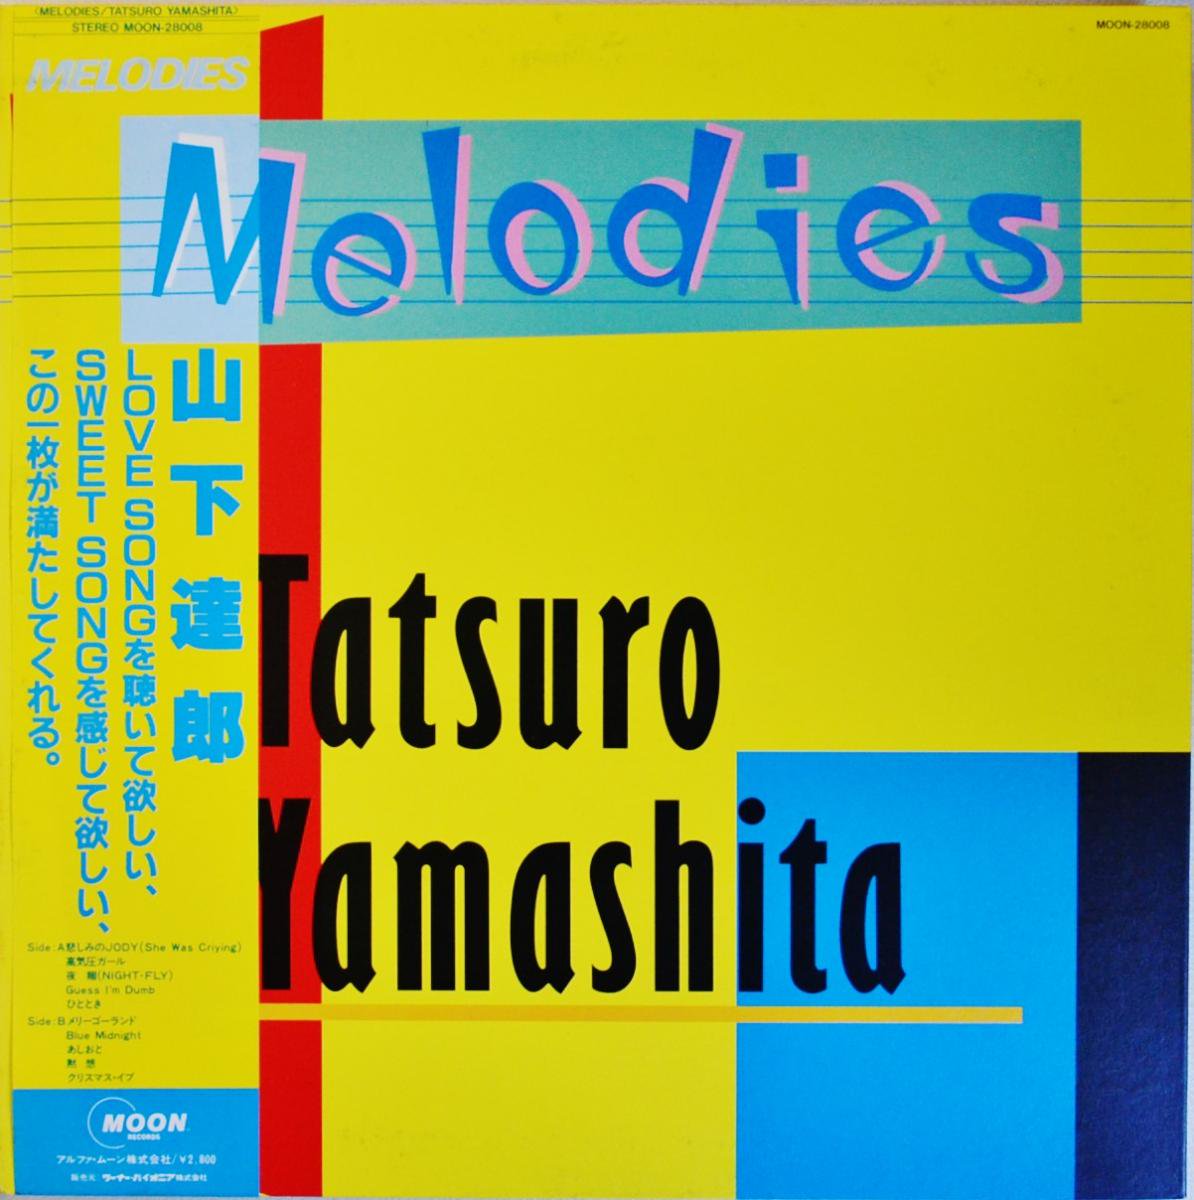 山下達郎 レコード yamashita tatsuro Melodies - 邦楽